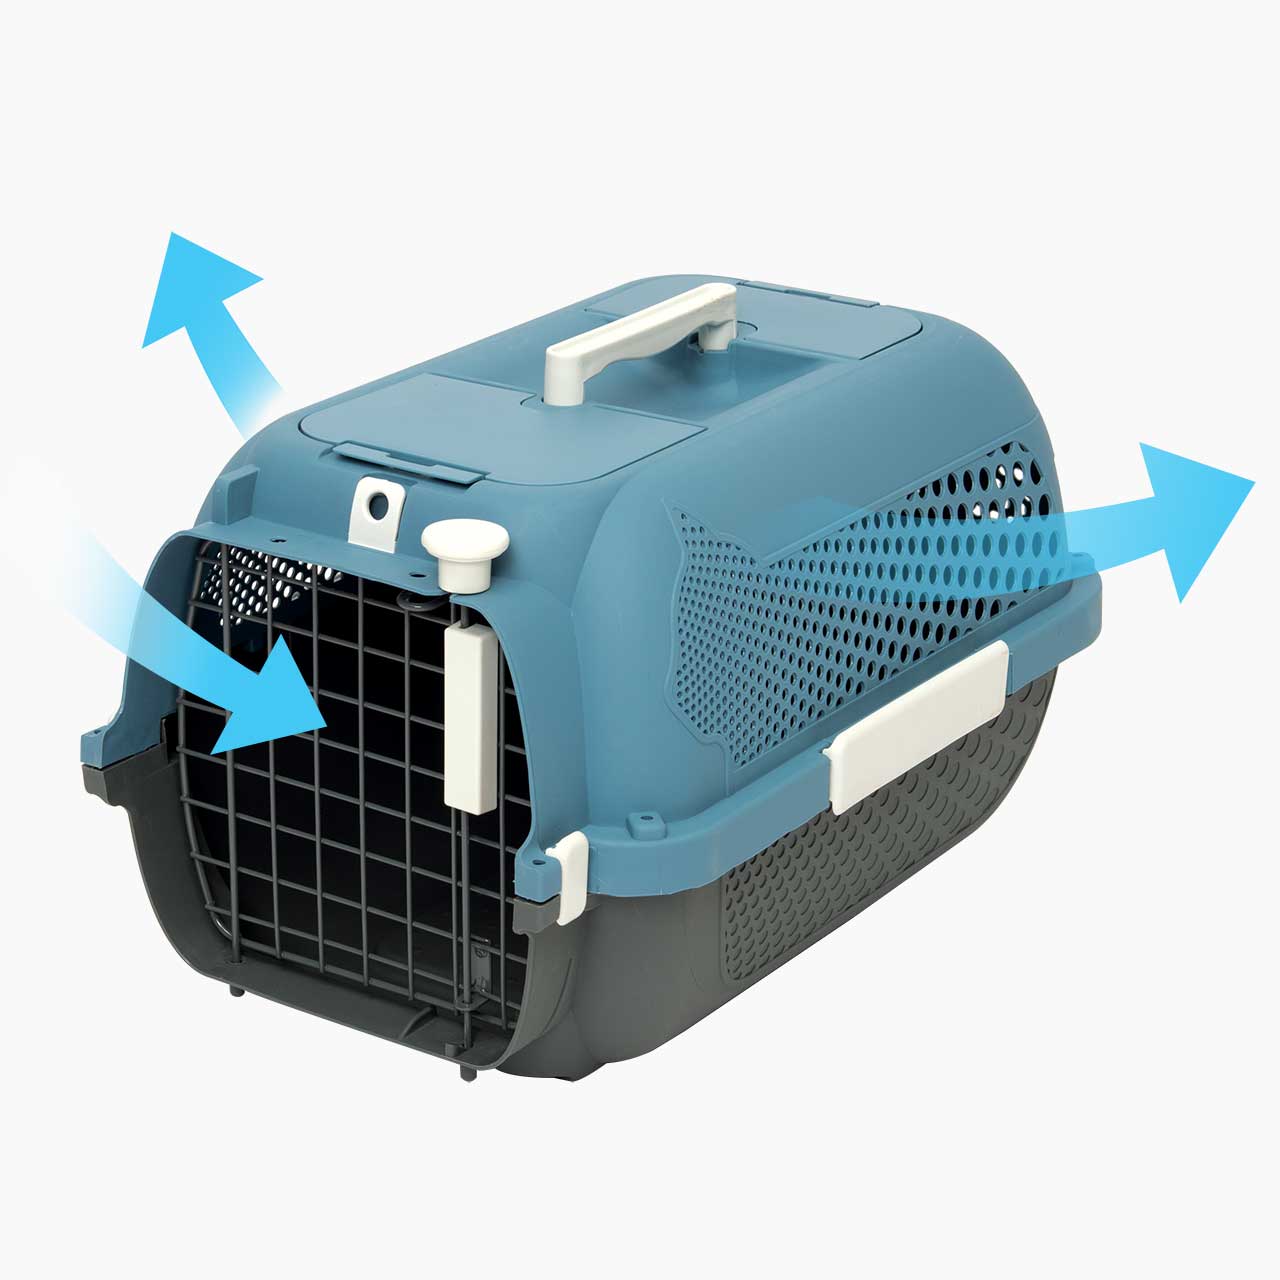 Ventilação ideal para manter seu gato confortável durante a viagem